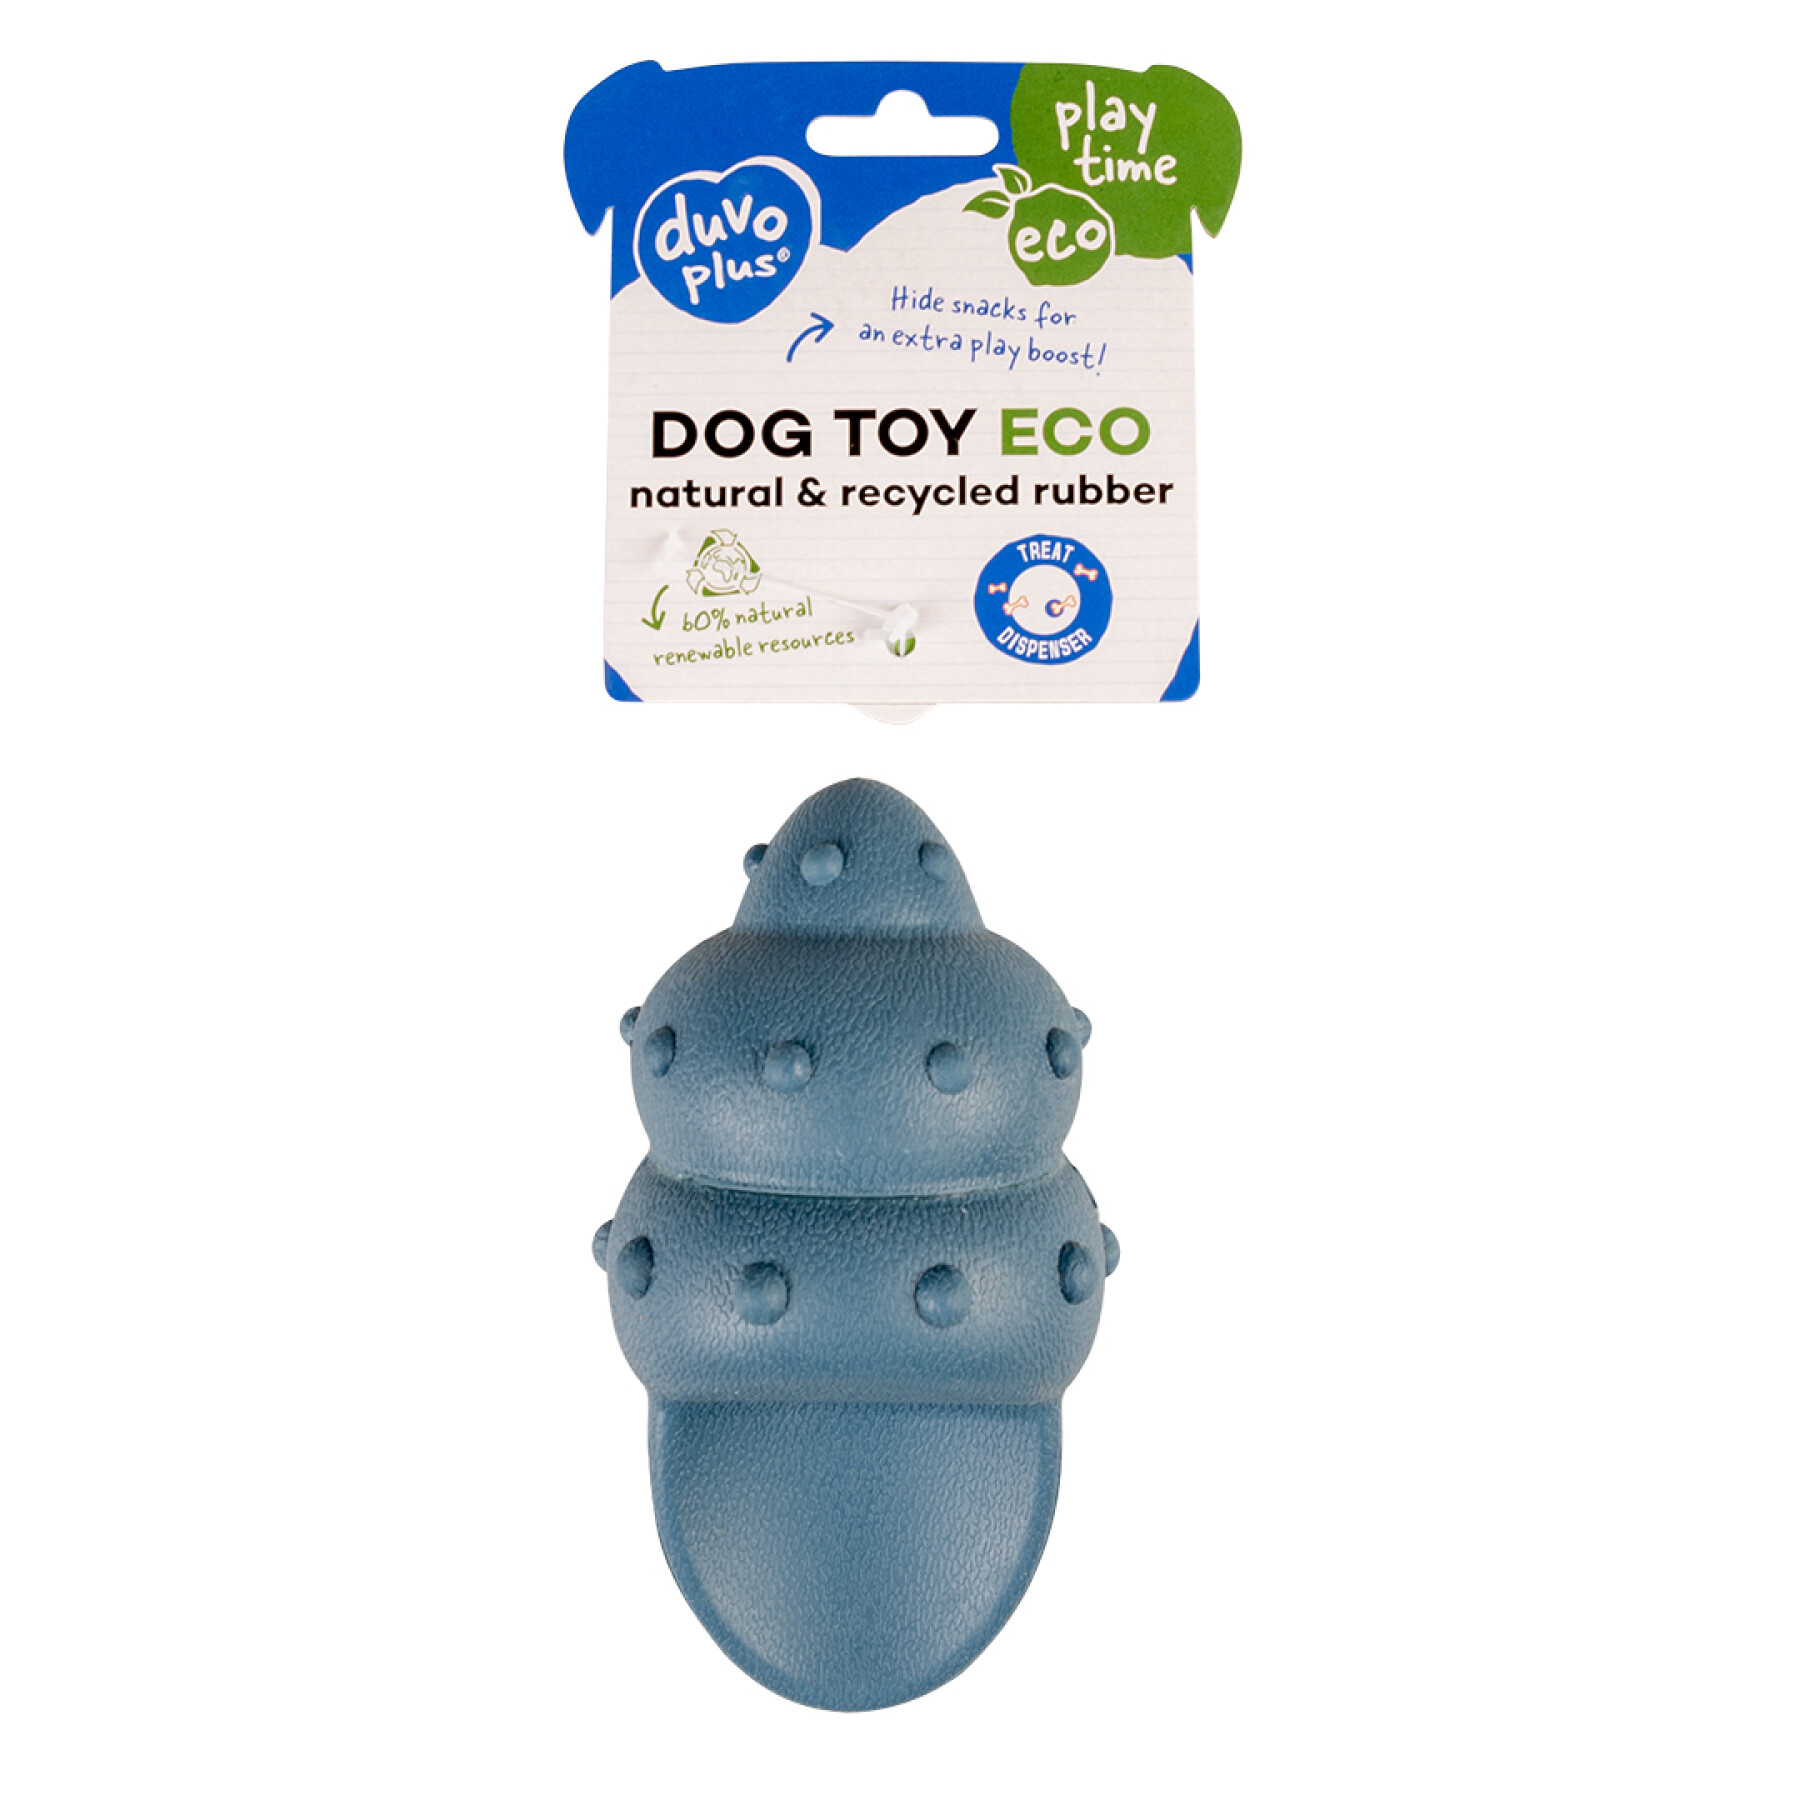 Futterspender für Hunde Muschelgummi Duvoplus Eco